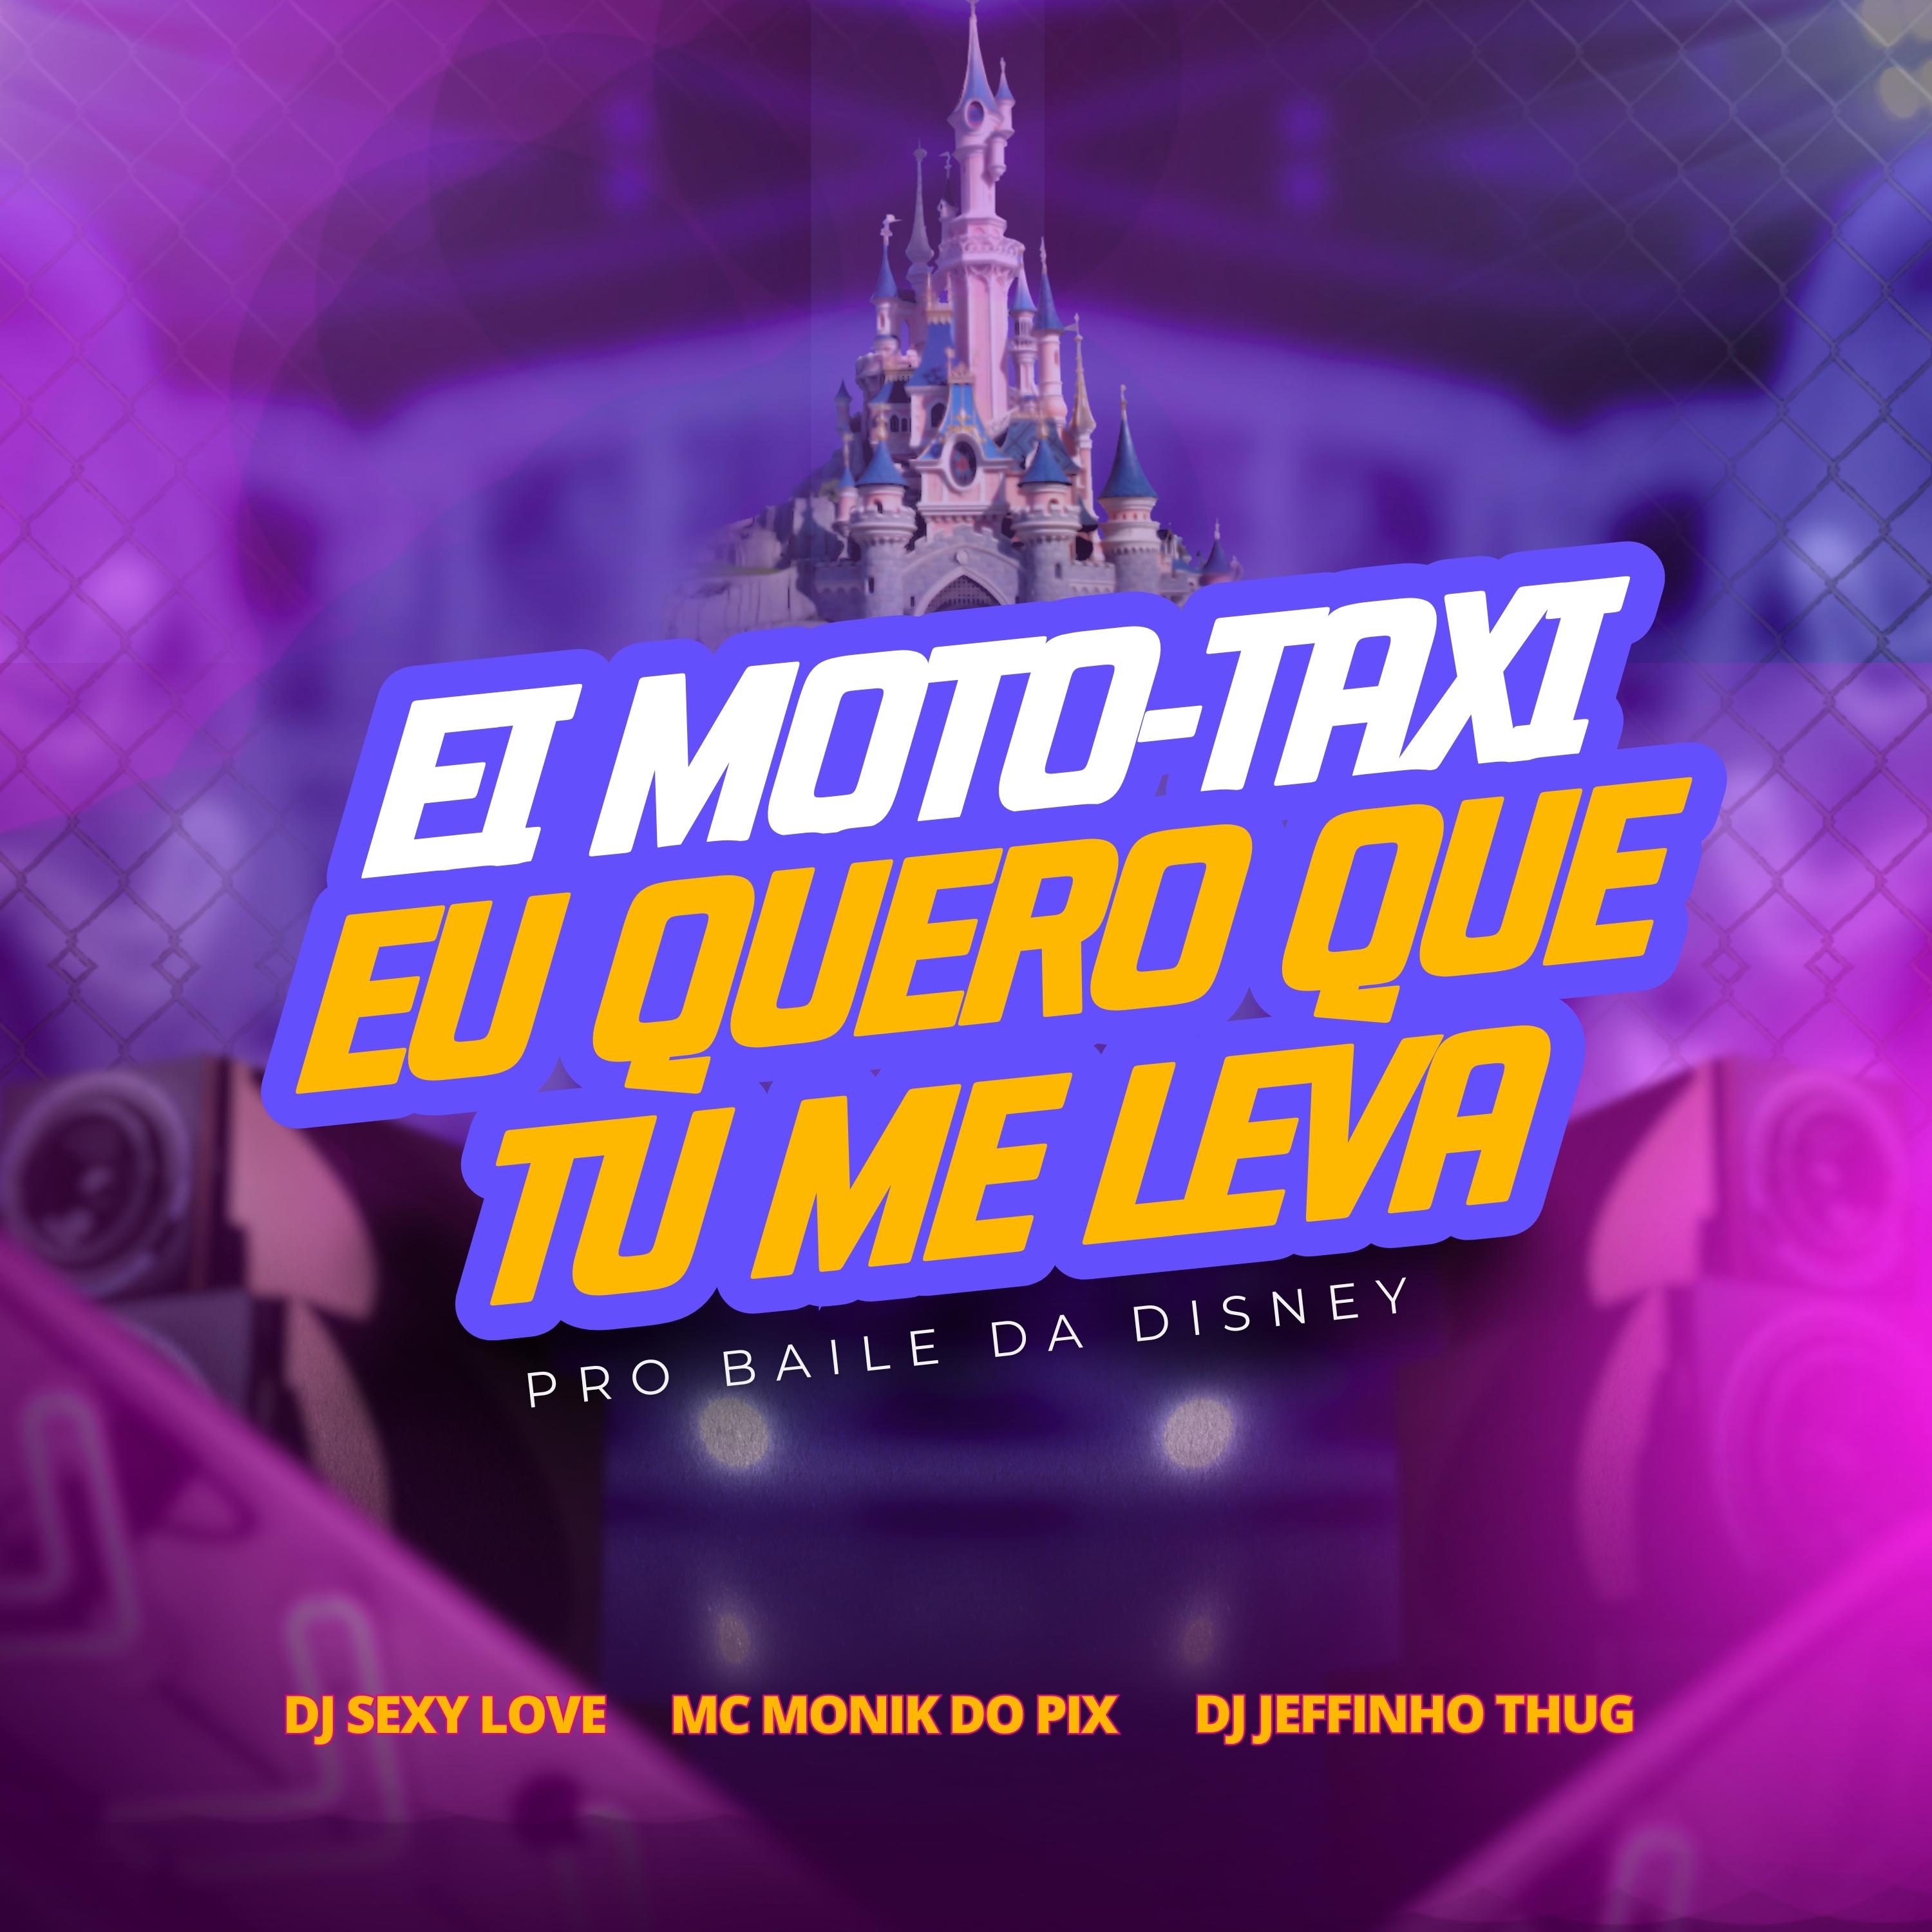 Mc Monik do pix - Ei Moto Taxi, Eu Quero Que Tu Me Leva pro Baile da Disney